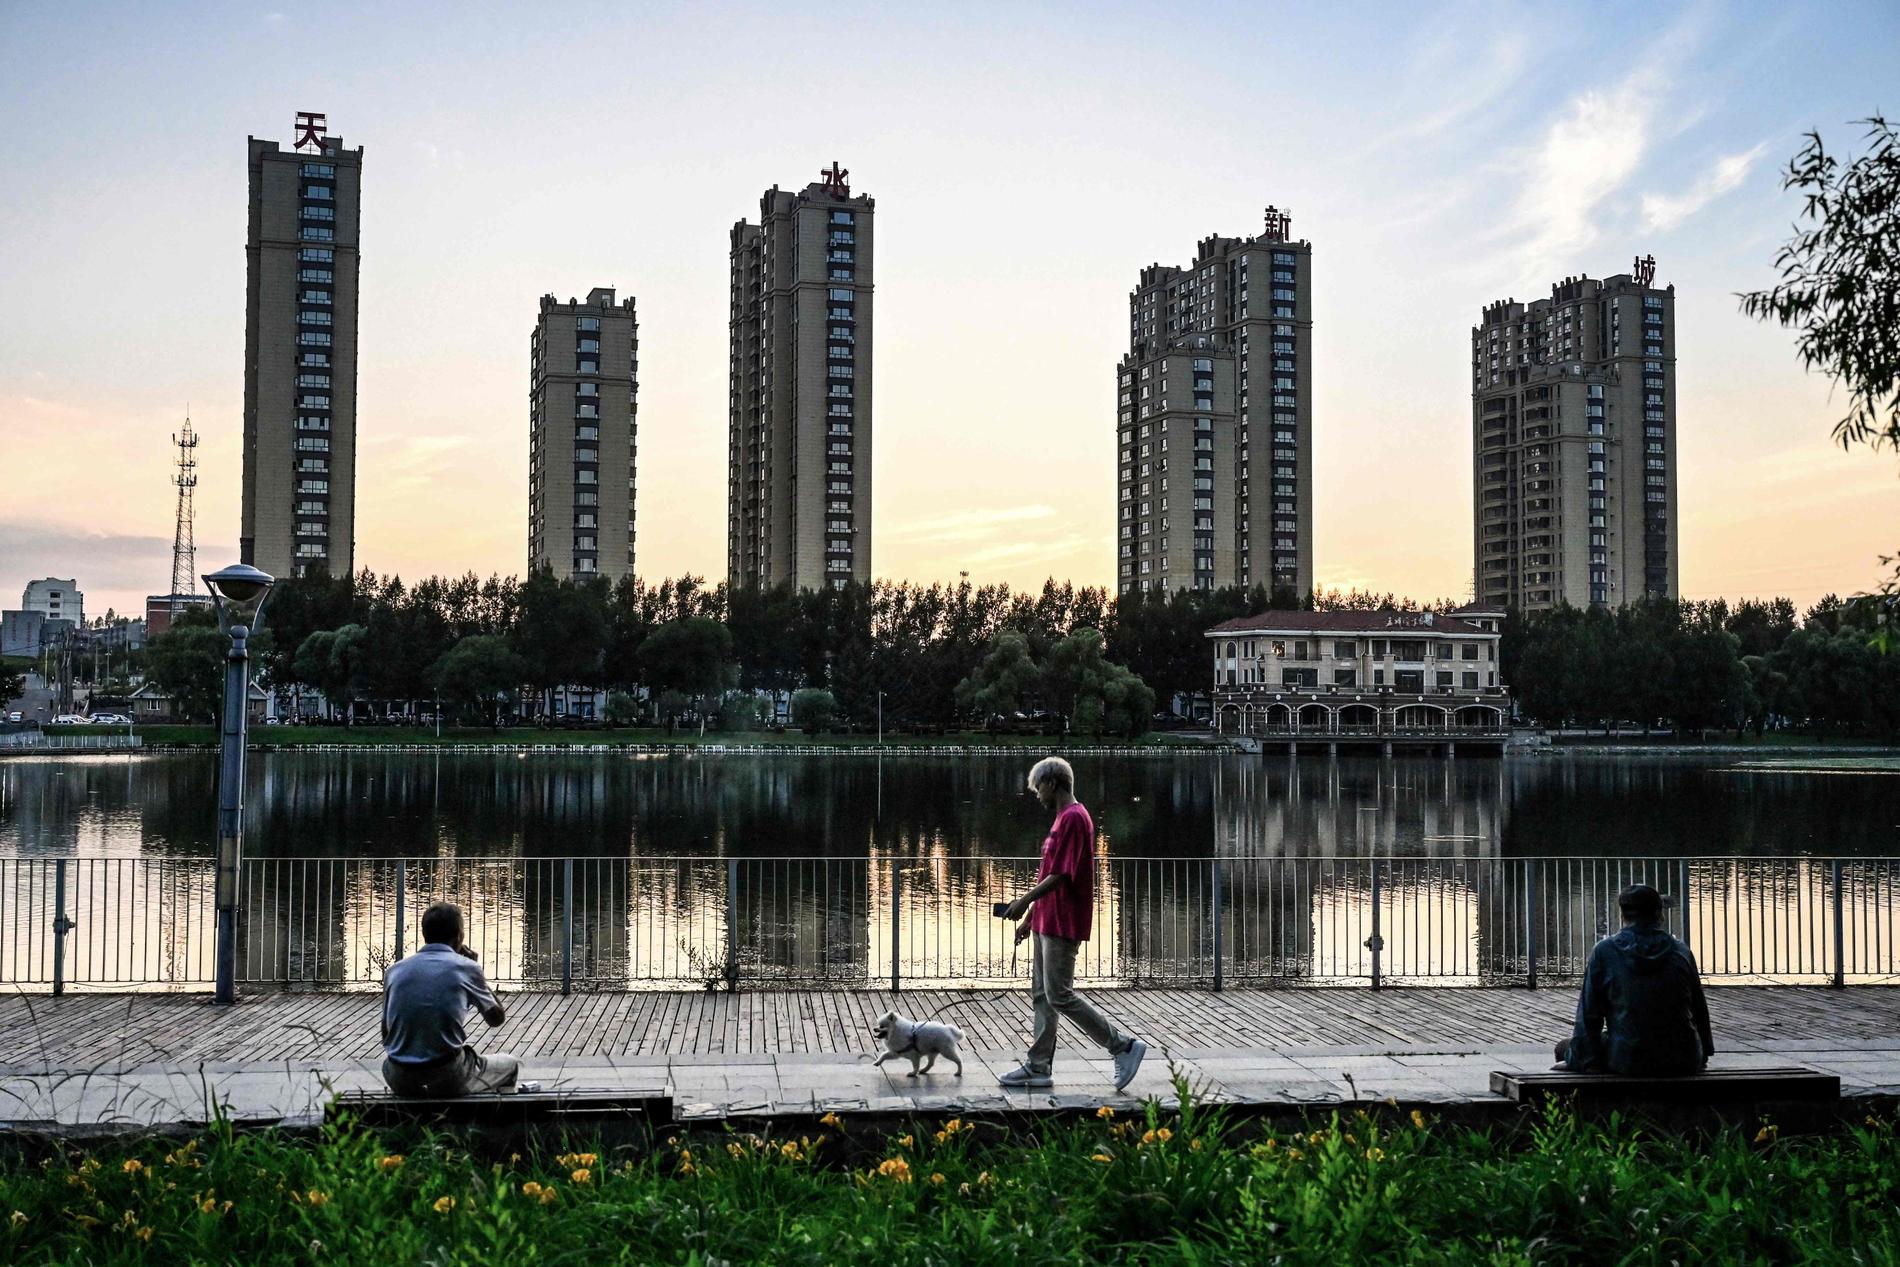 Kinas eiendomsindustri vokste i lynfart fra slutten av 90-tallet og var en viktig komponent i landets økonomiske vekst.